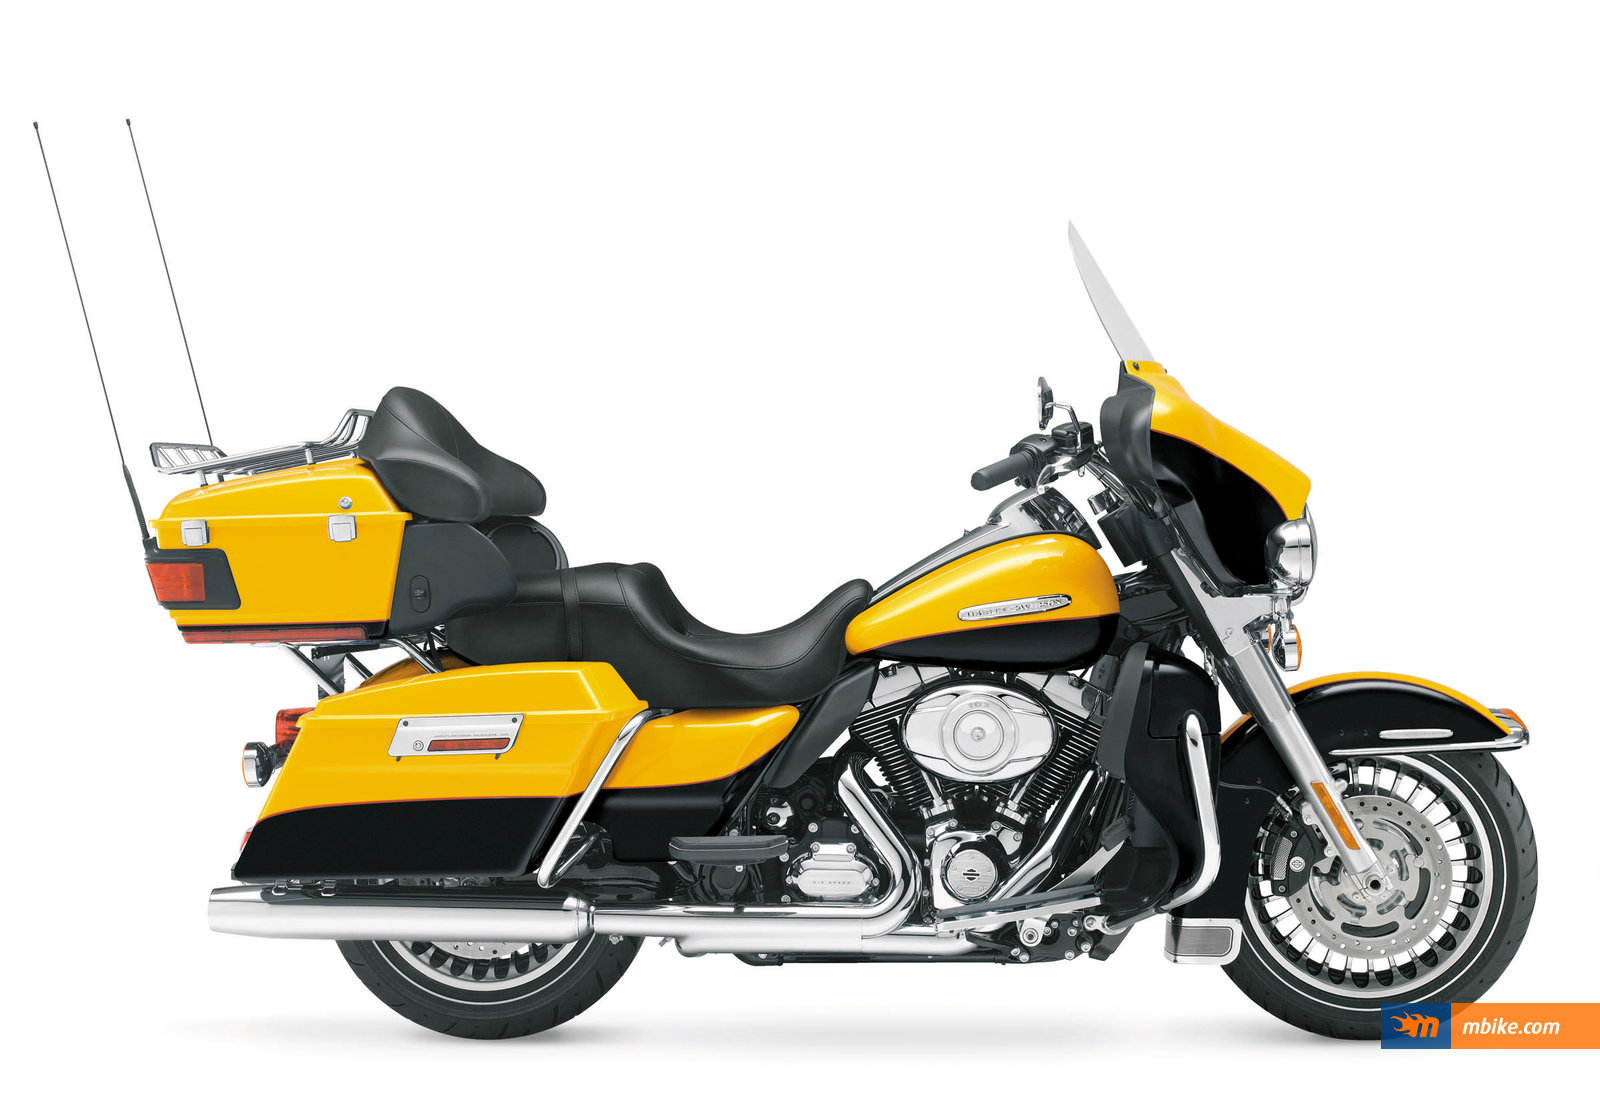 2013 Harley-Davidson FLHTK Electra Glide Ultra Limited